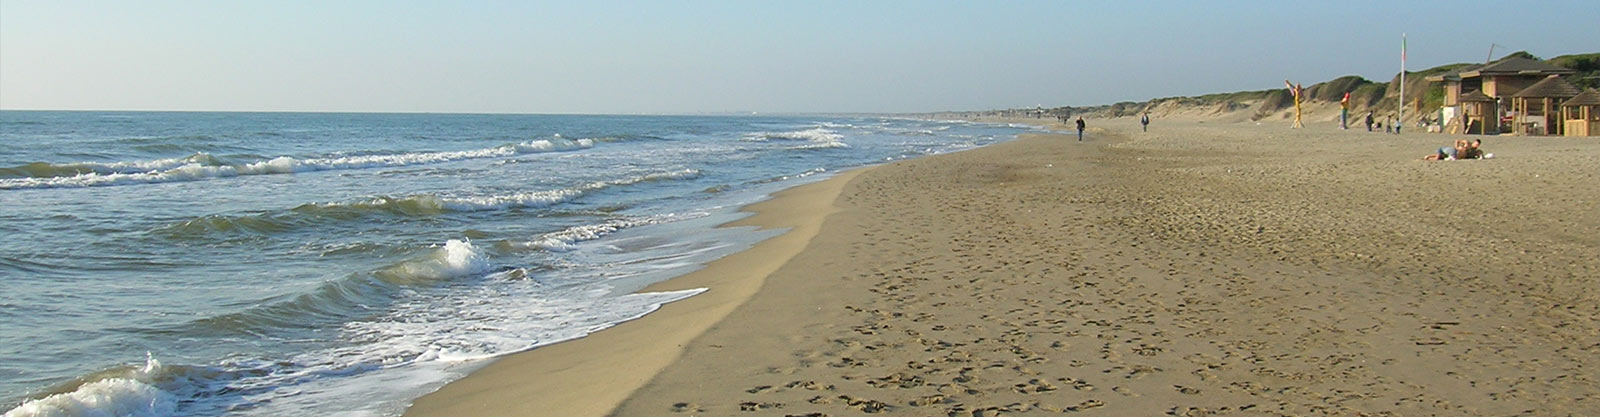 Fiumicino's Beaches